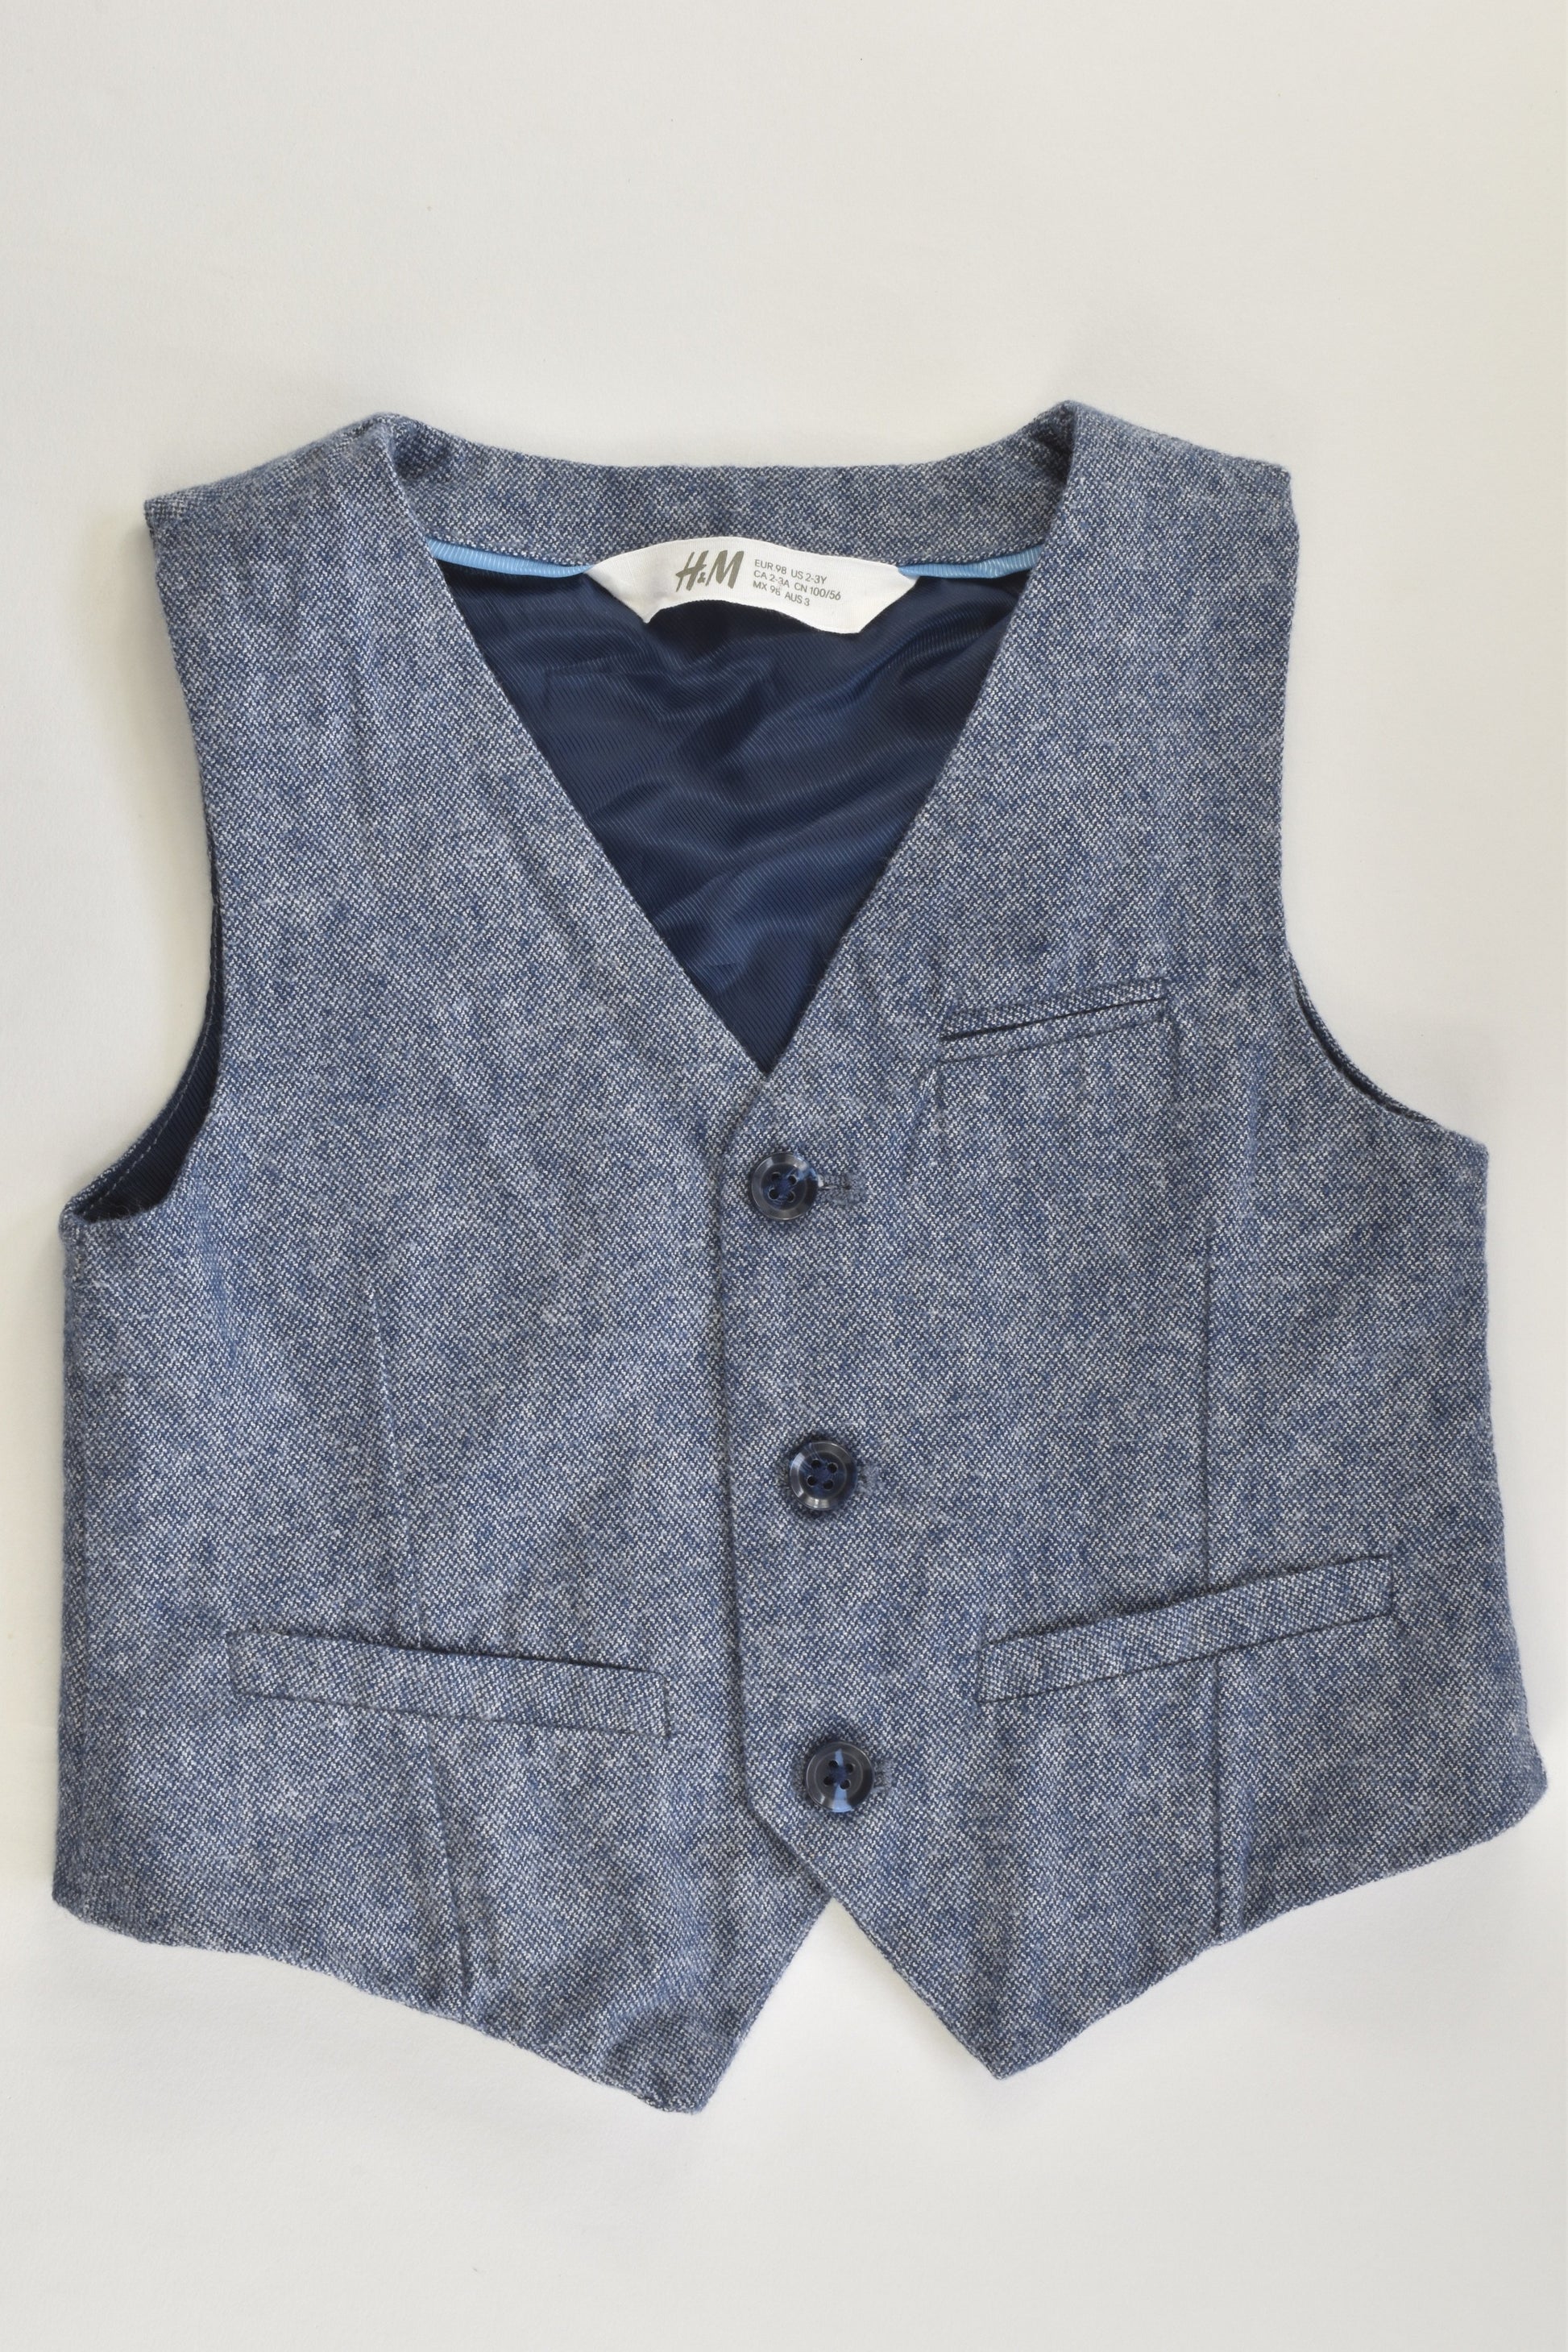 H&M Size 3 (98 cm) Vest